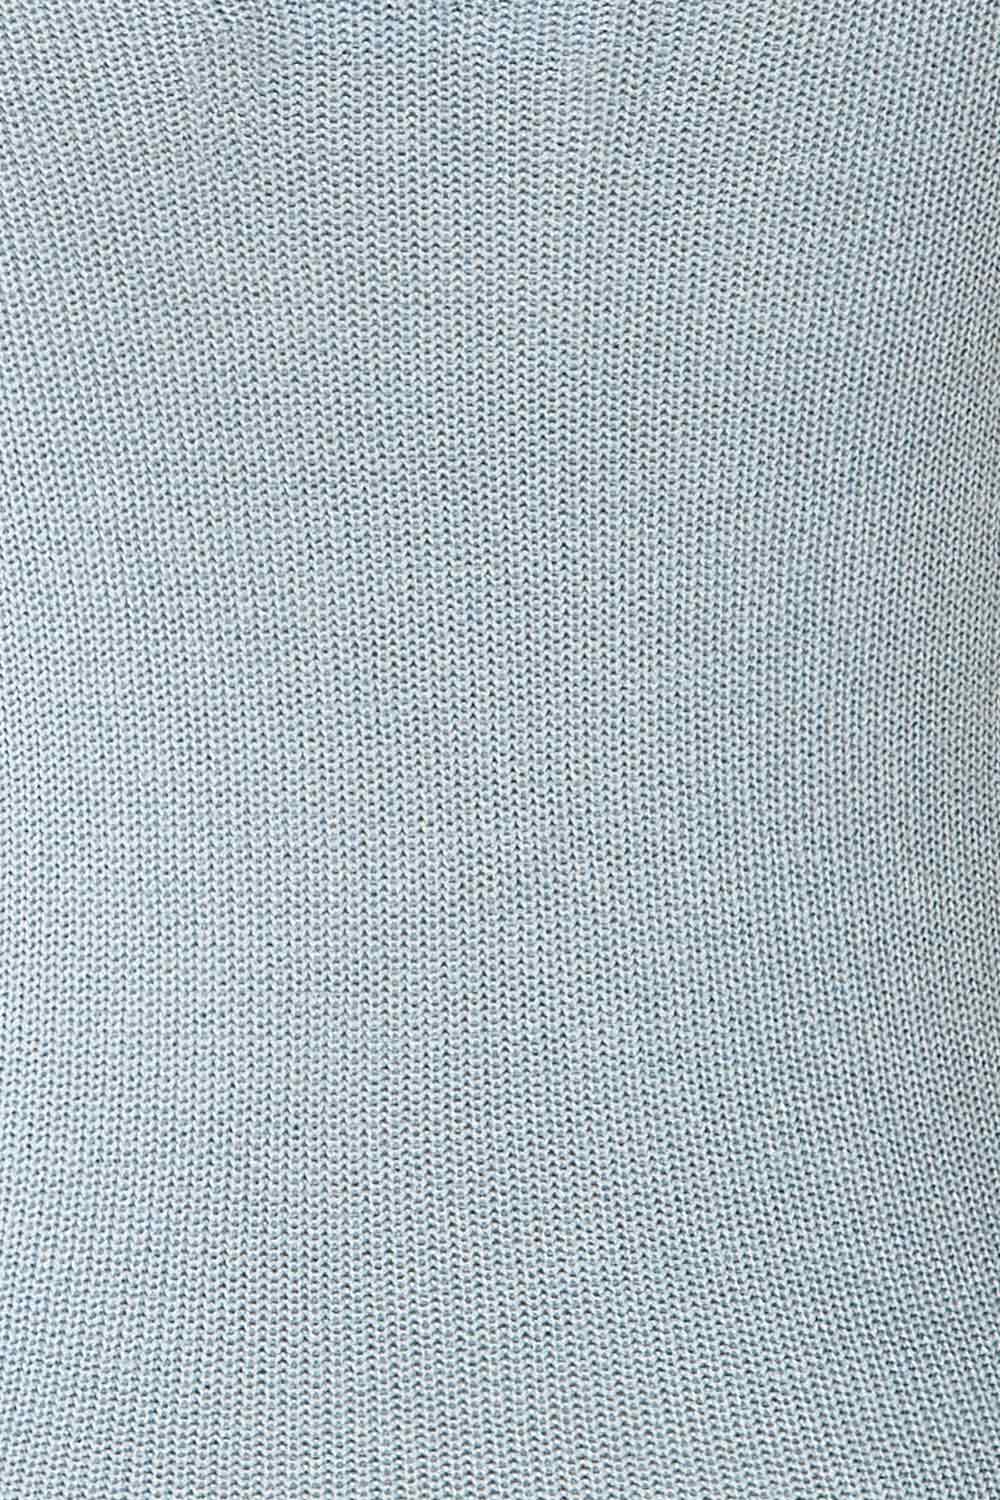 Juva Blue V-Neck Knit Tank Top | La petite garçonne fabric 